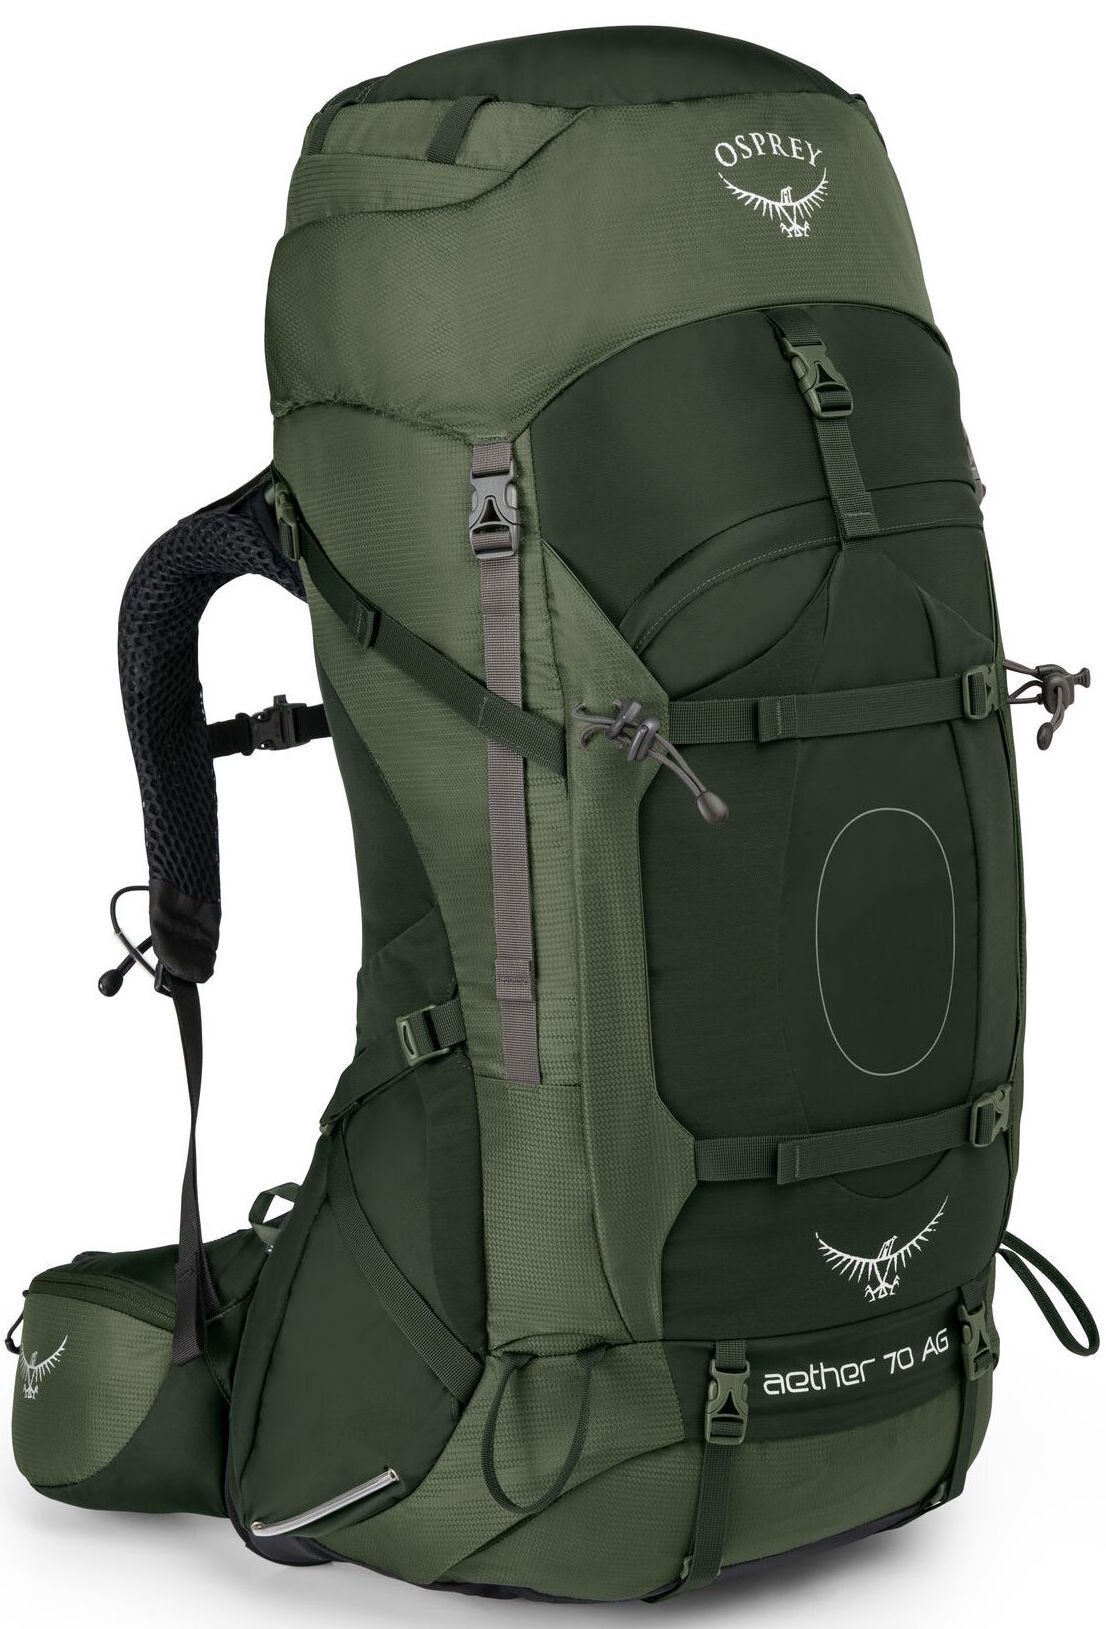 Osprey - Aether AG 70 - Backpack - Men's